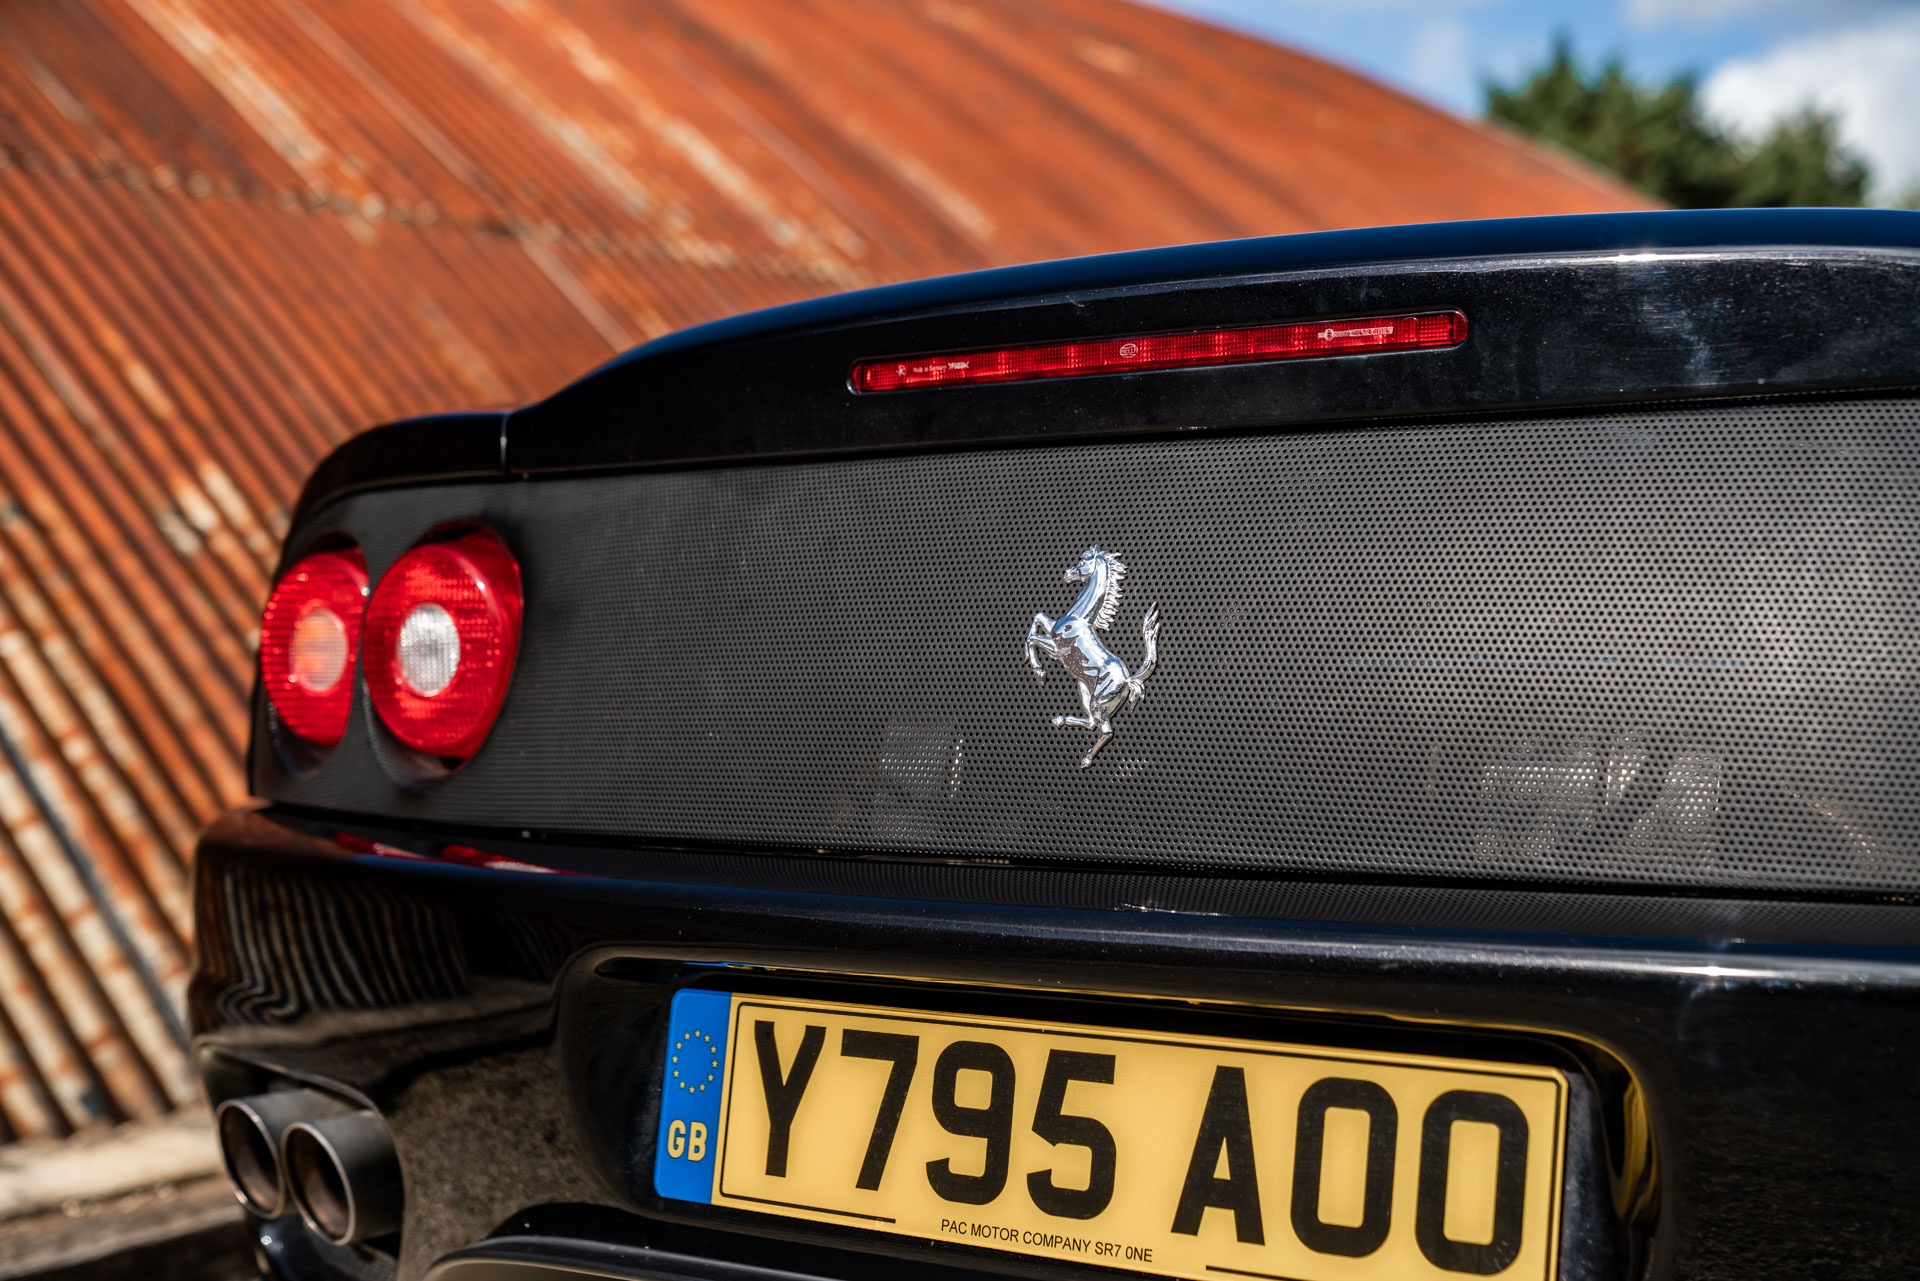 Chi tiết siêu xe Ferrari 360 Spider của David Beckham - ảnh 11